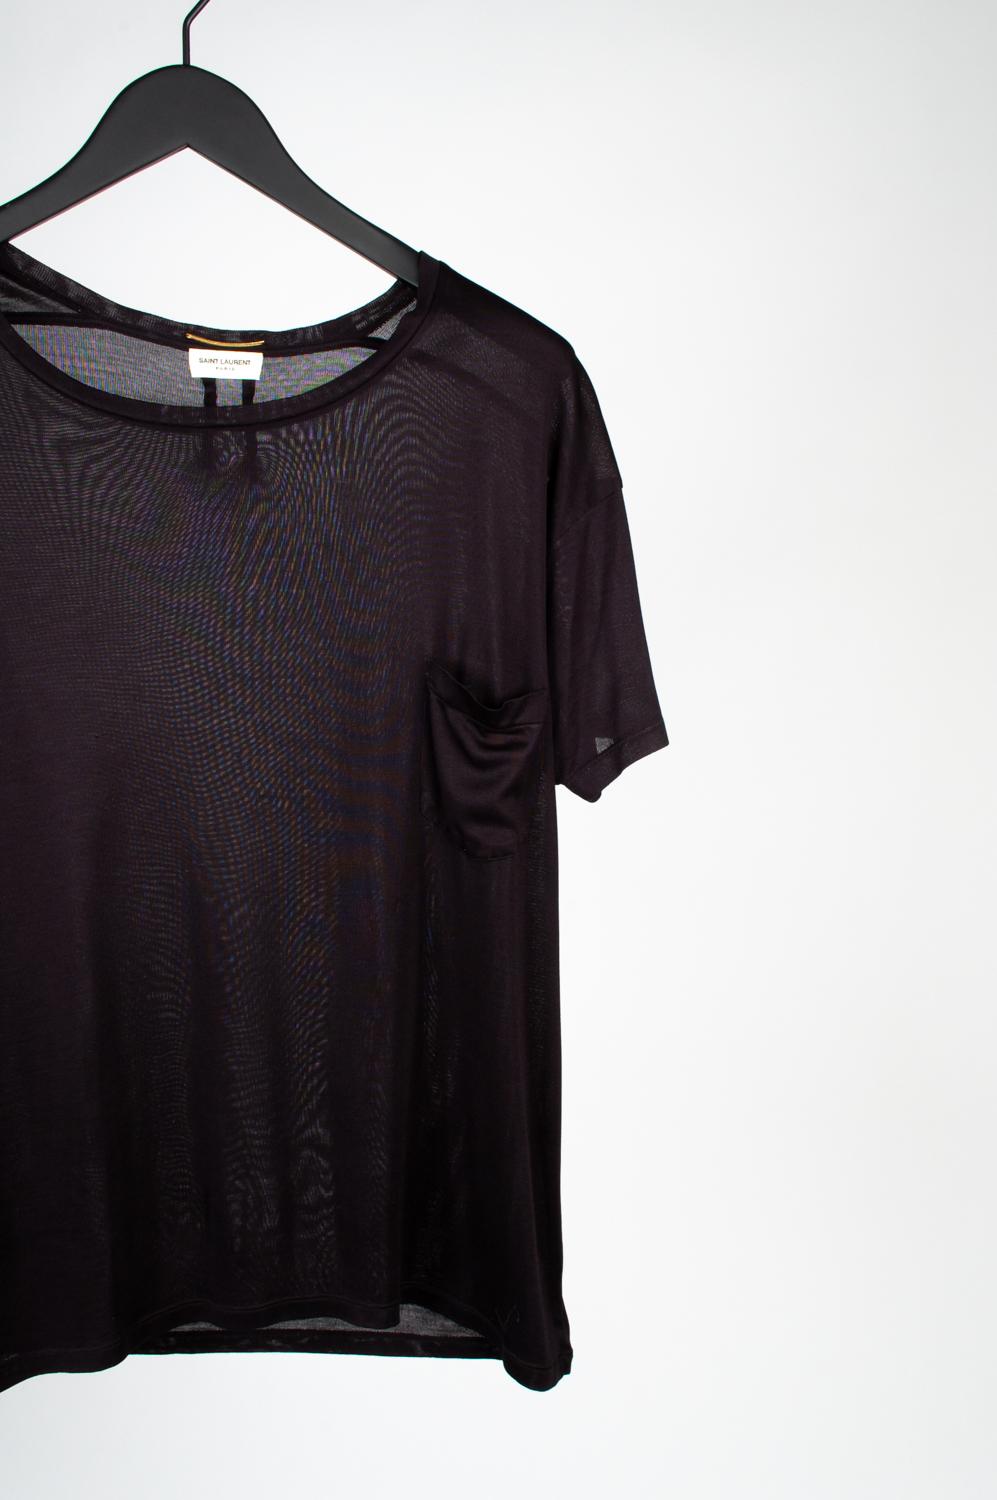 100% echt Saint Laurent Rundhalsausschnitt dünnes Sommer-T-Shirt 
Farbe: schwarz
(Eine tatsächliche Farbe kann ein wenig variieren aufgrund individueller Computer-Bildschirm Interpretation)
MATERIAL: unbekannt fehlendes Pflegeetikett
Tag Größe: